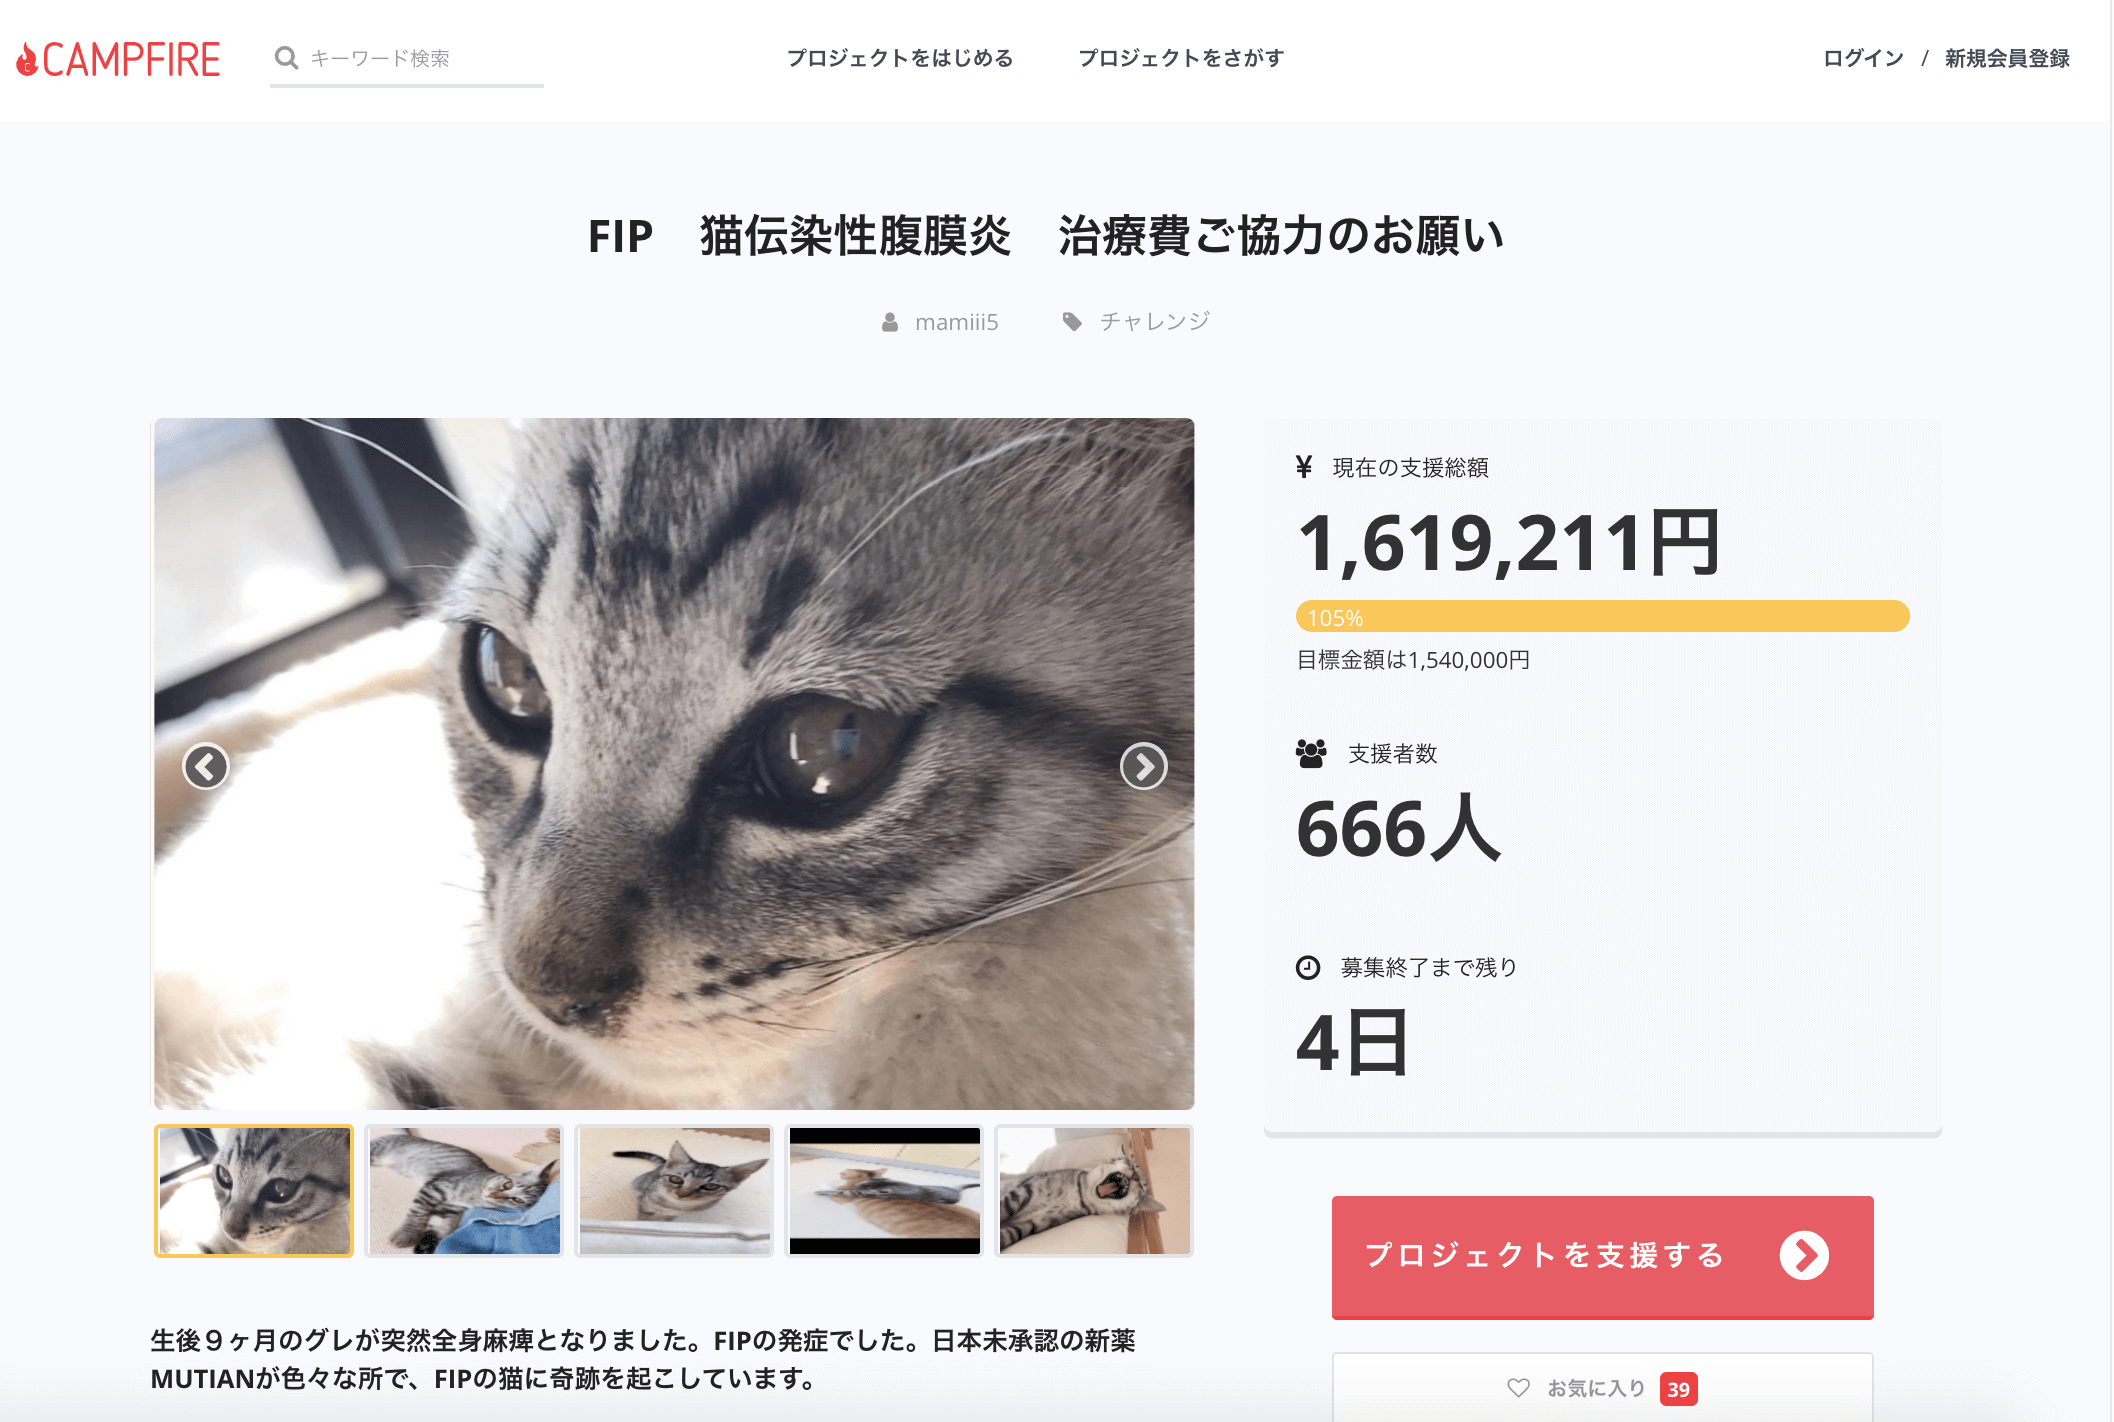 保護猫のグレくん 1,619,211円達成